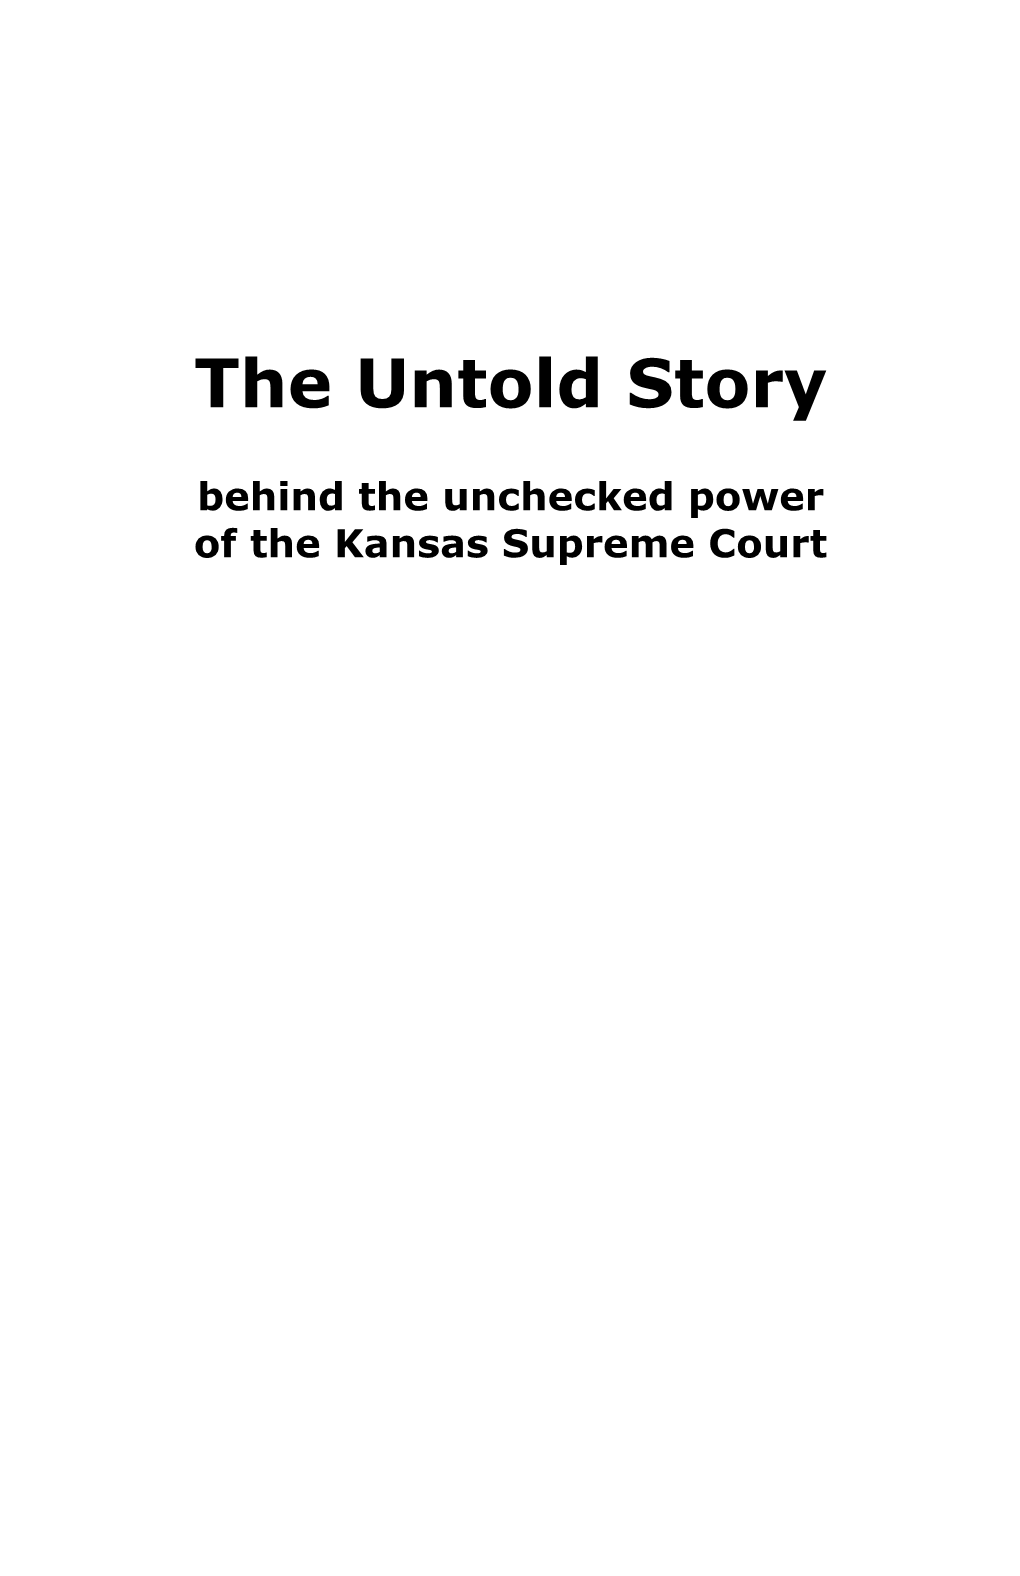 Update Untold Story Booklet (2017 03 29 14 46 23 UTC)